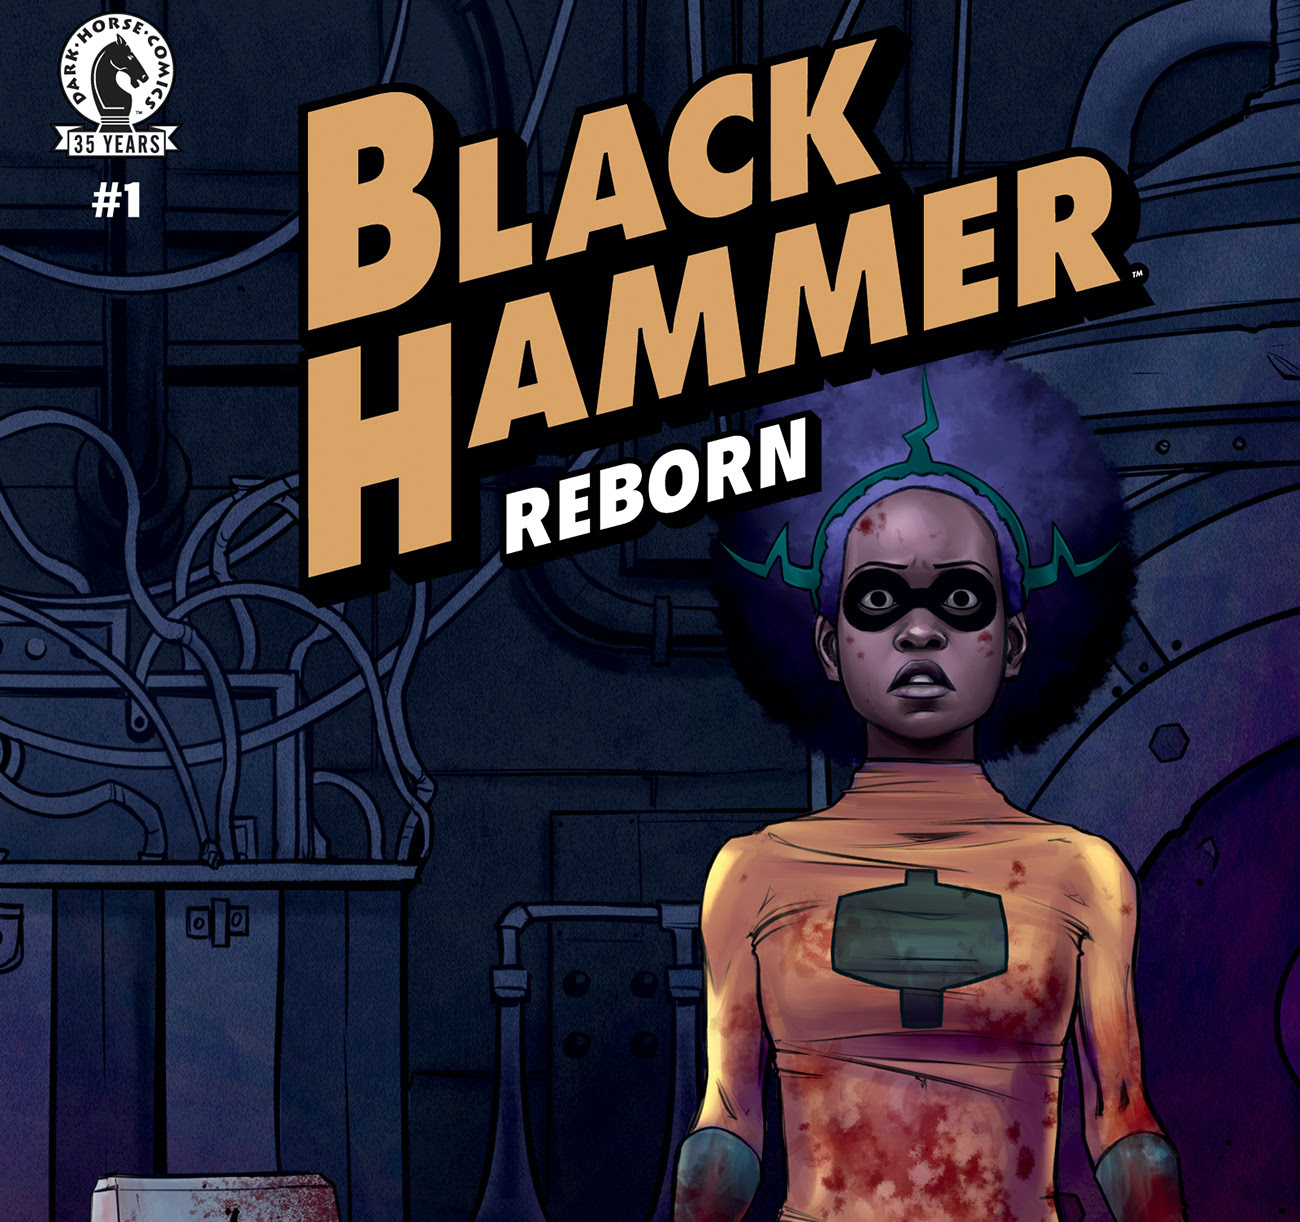 Dark Horse announces 'Black Hammer: Reborn' for June 23rd